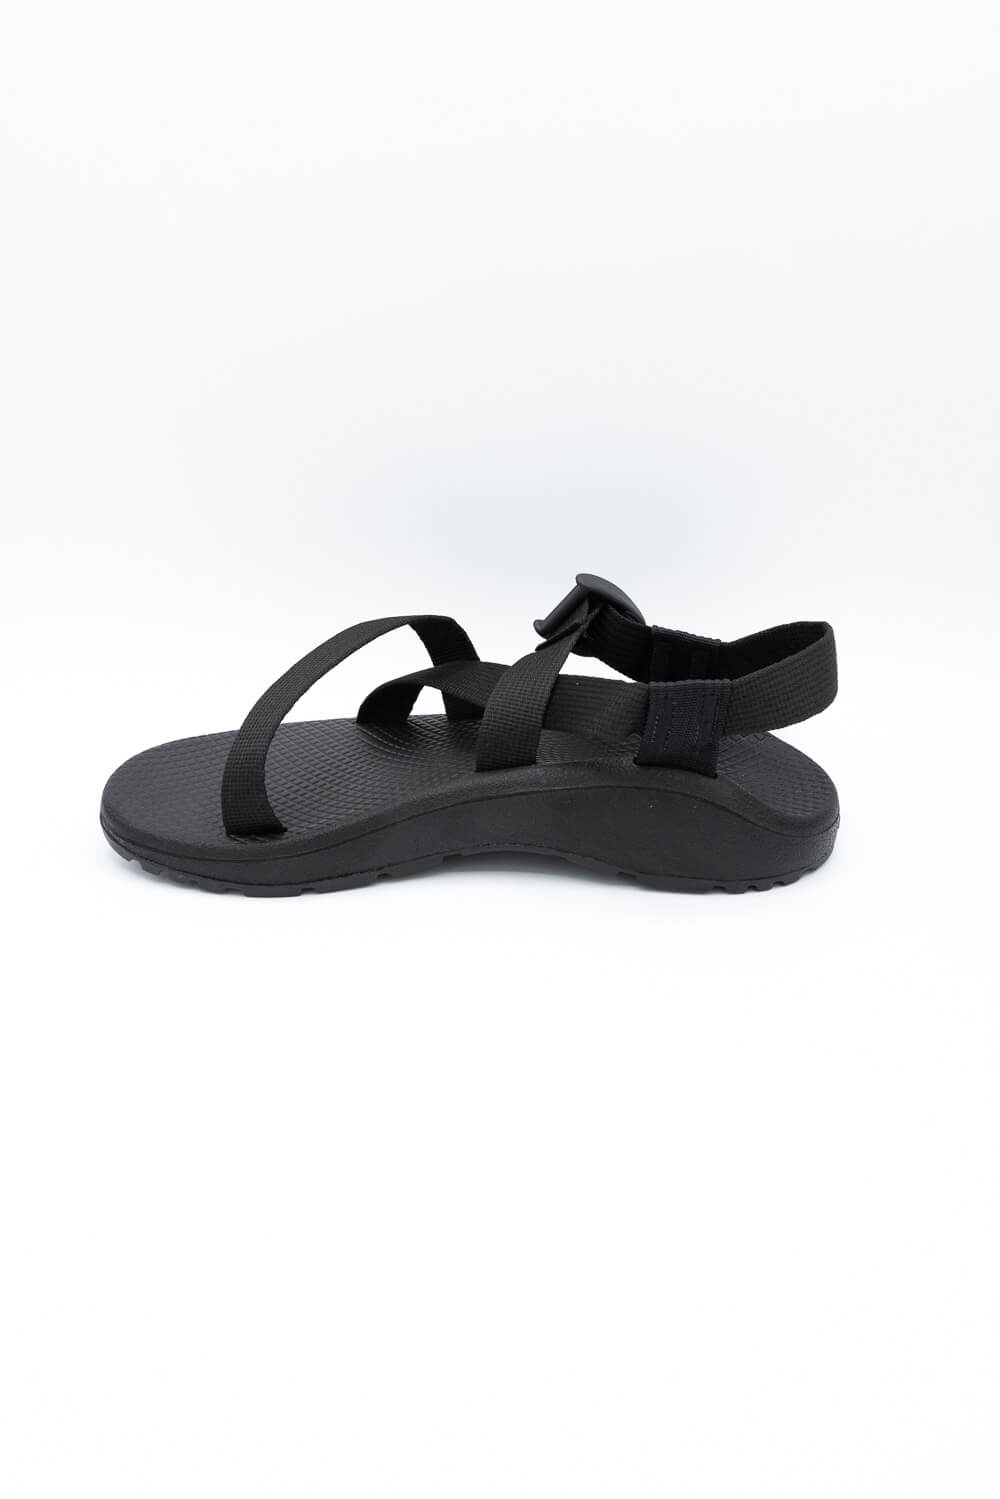 Chaco Z Cloud Sandals for Women in Black | J107366 – Glik's